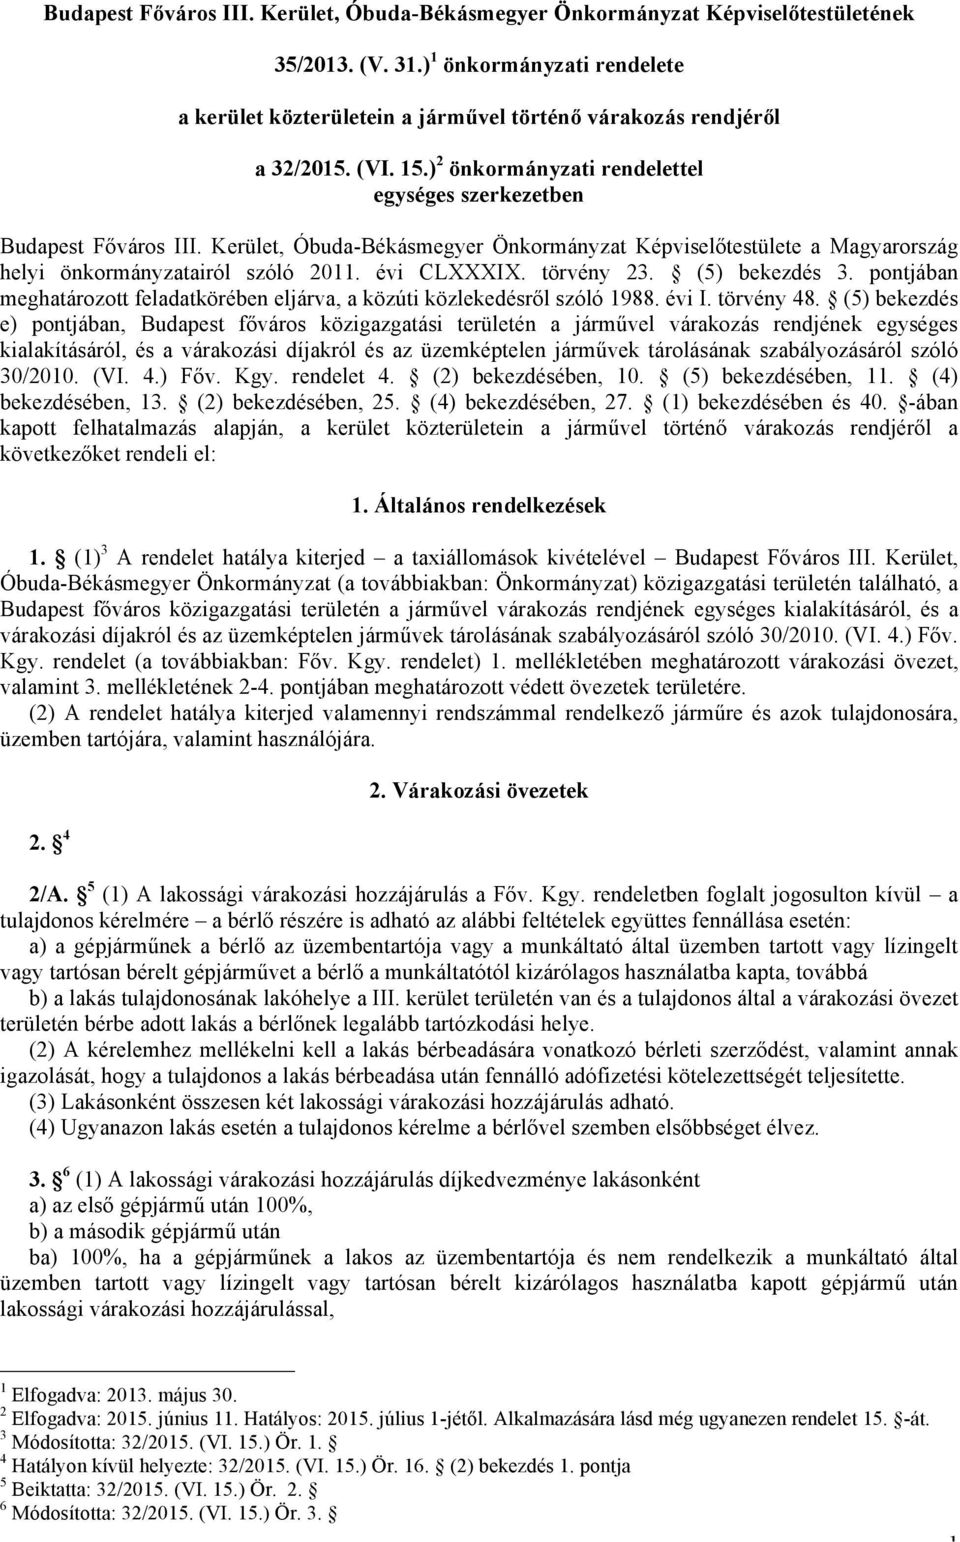 Kerület, Óbuda-Békásmegyer Önkormányzat Képviselőtestülete a Magyarország helyi önkormányzatairól szóló 2011. évi CLXXXIX. törvény 23. (5) bekezdés 3.